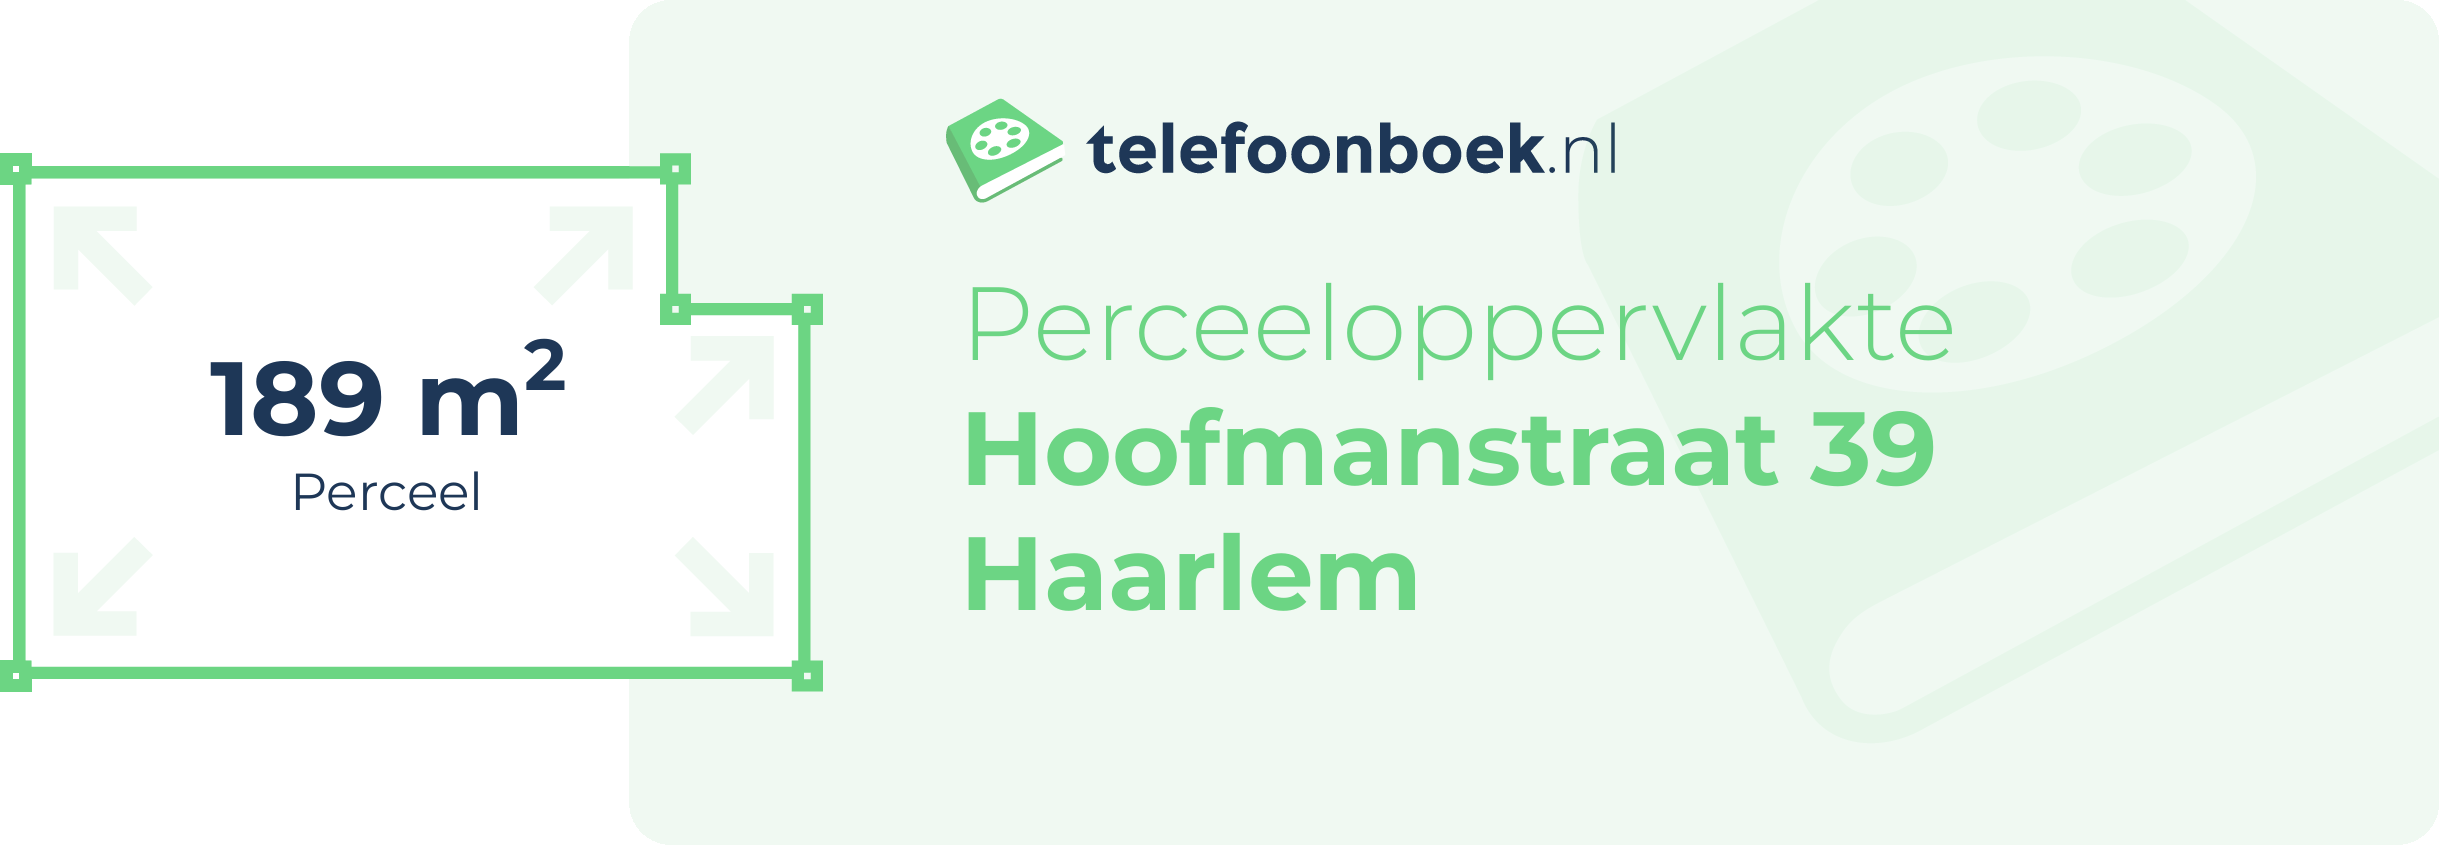 Perceeloppervlakte Hoofmanstraat 39 Haarlem